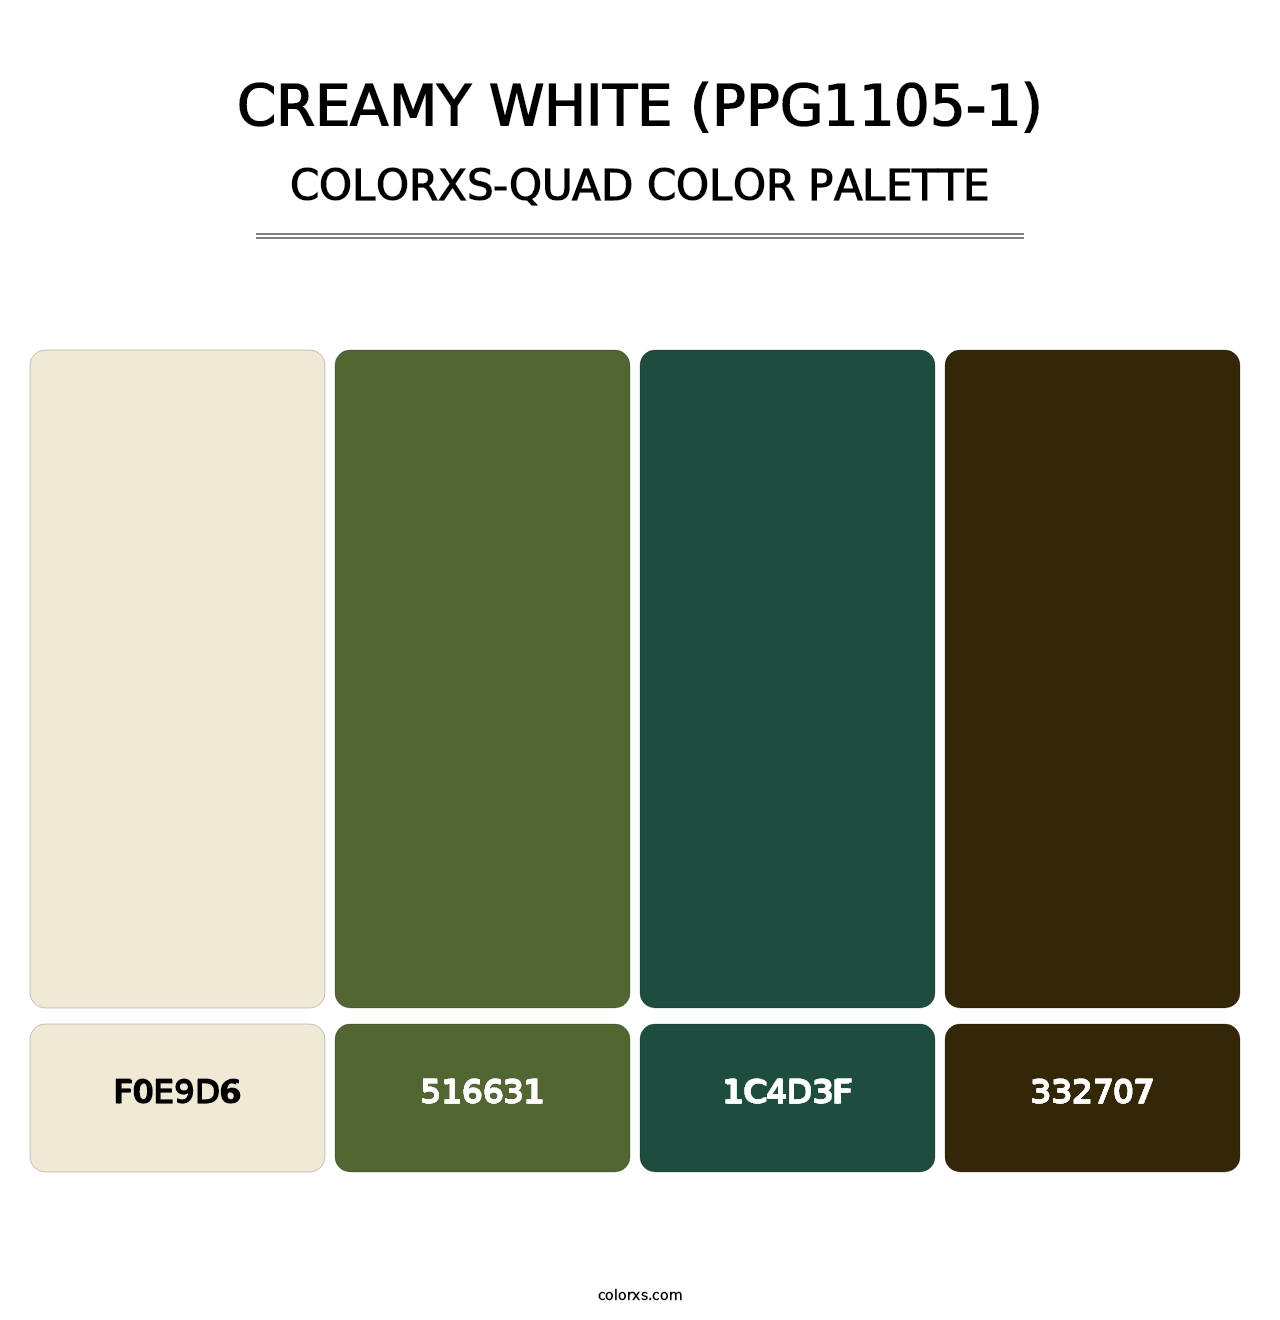 Creamy White (PPG1105-1) - Colorxs Quad Palette